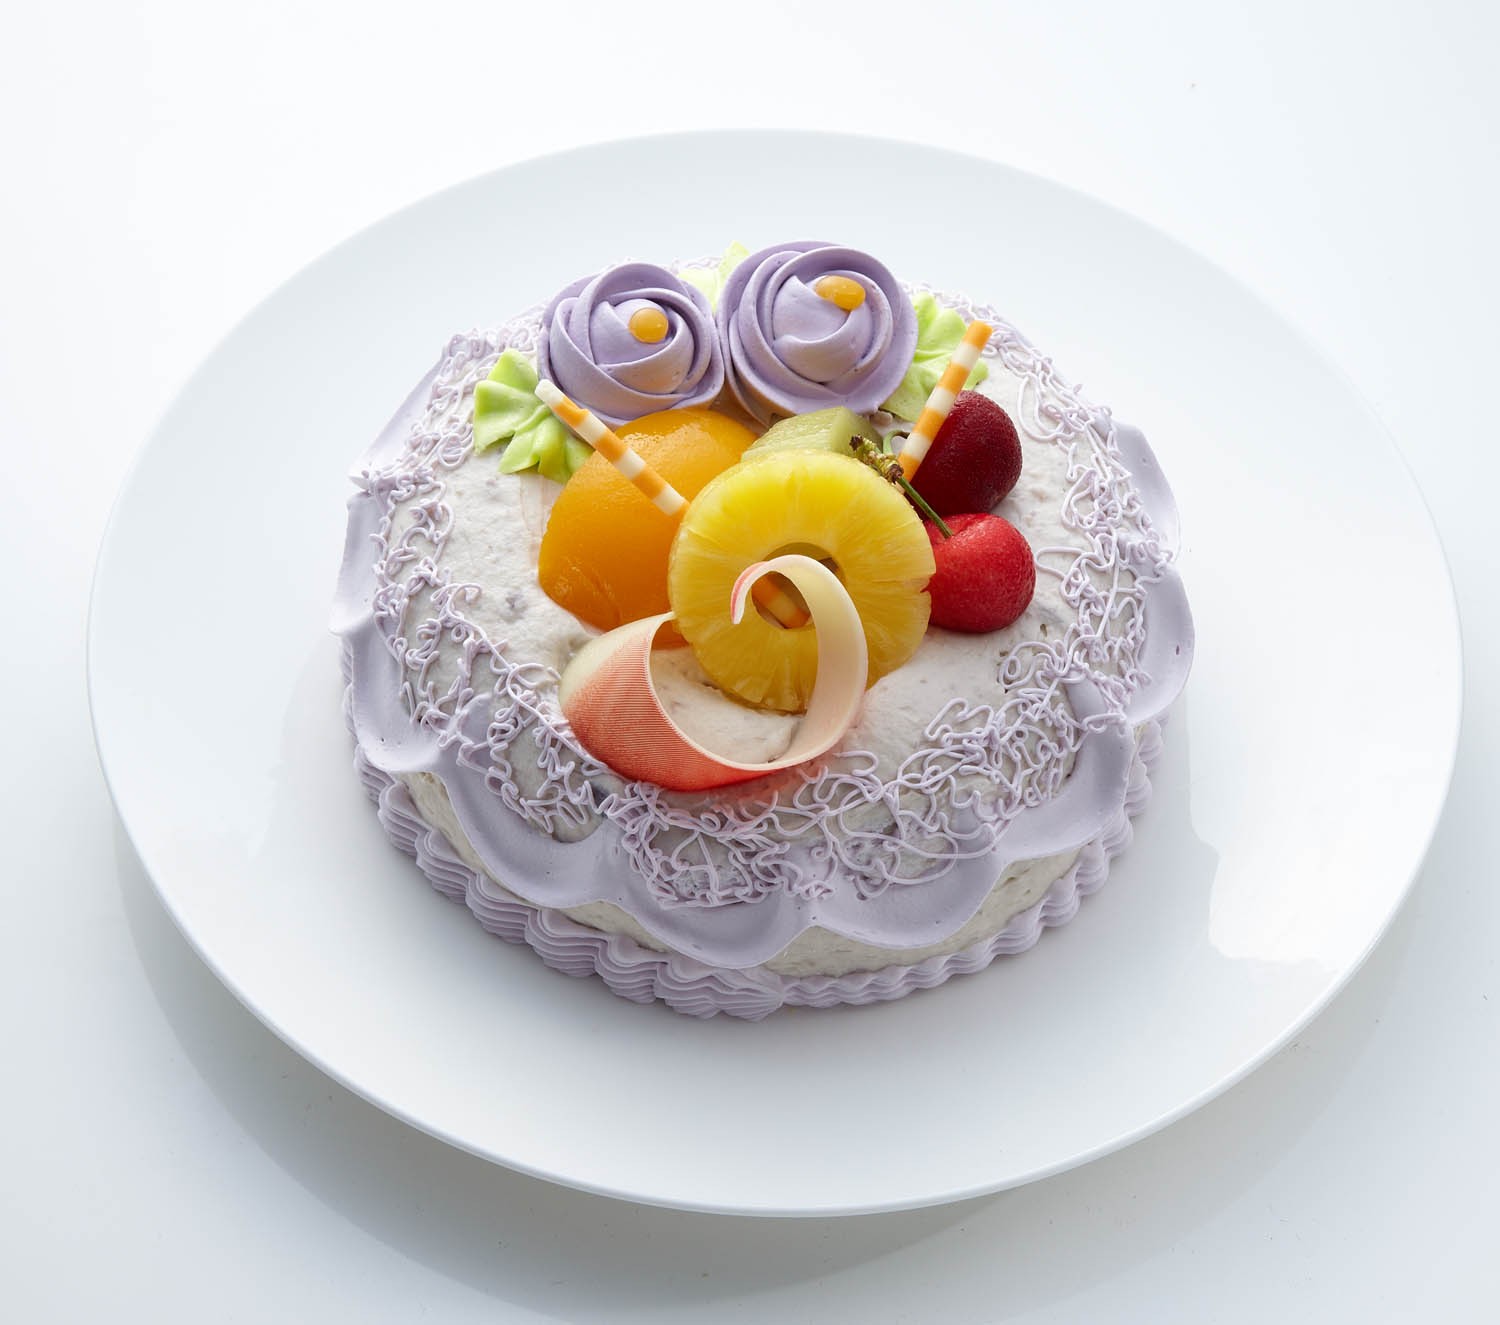 芋頭藍莓蛋糕